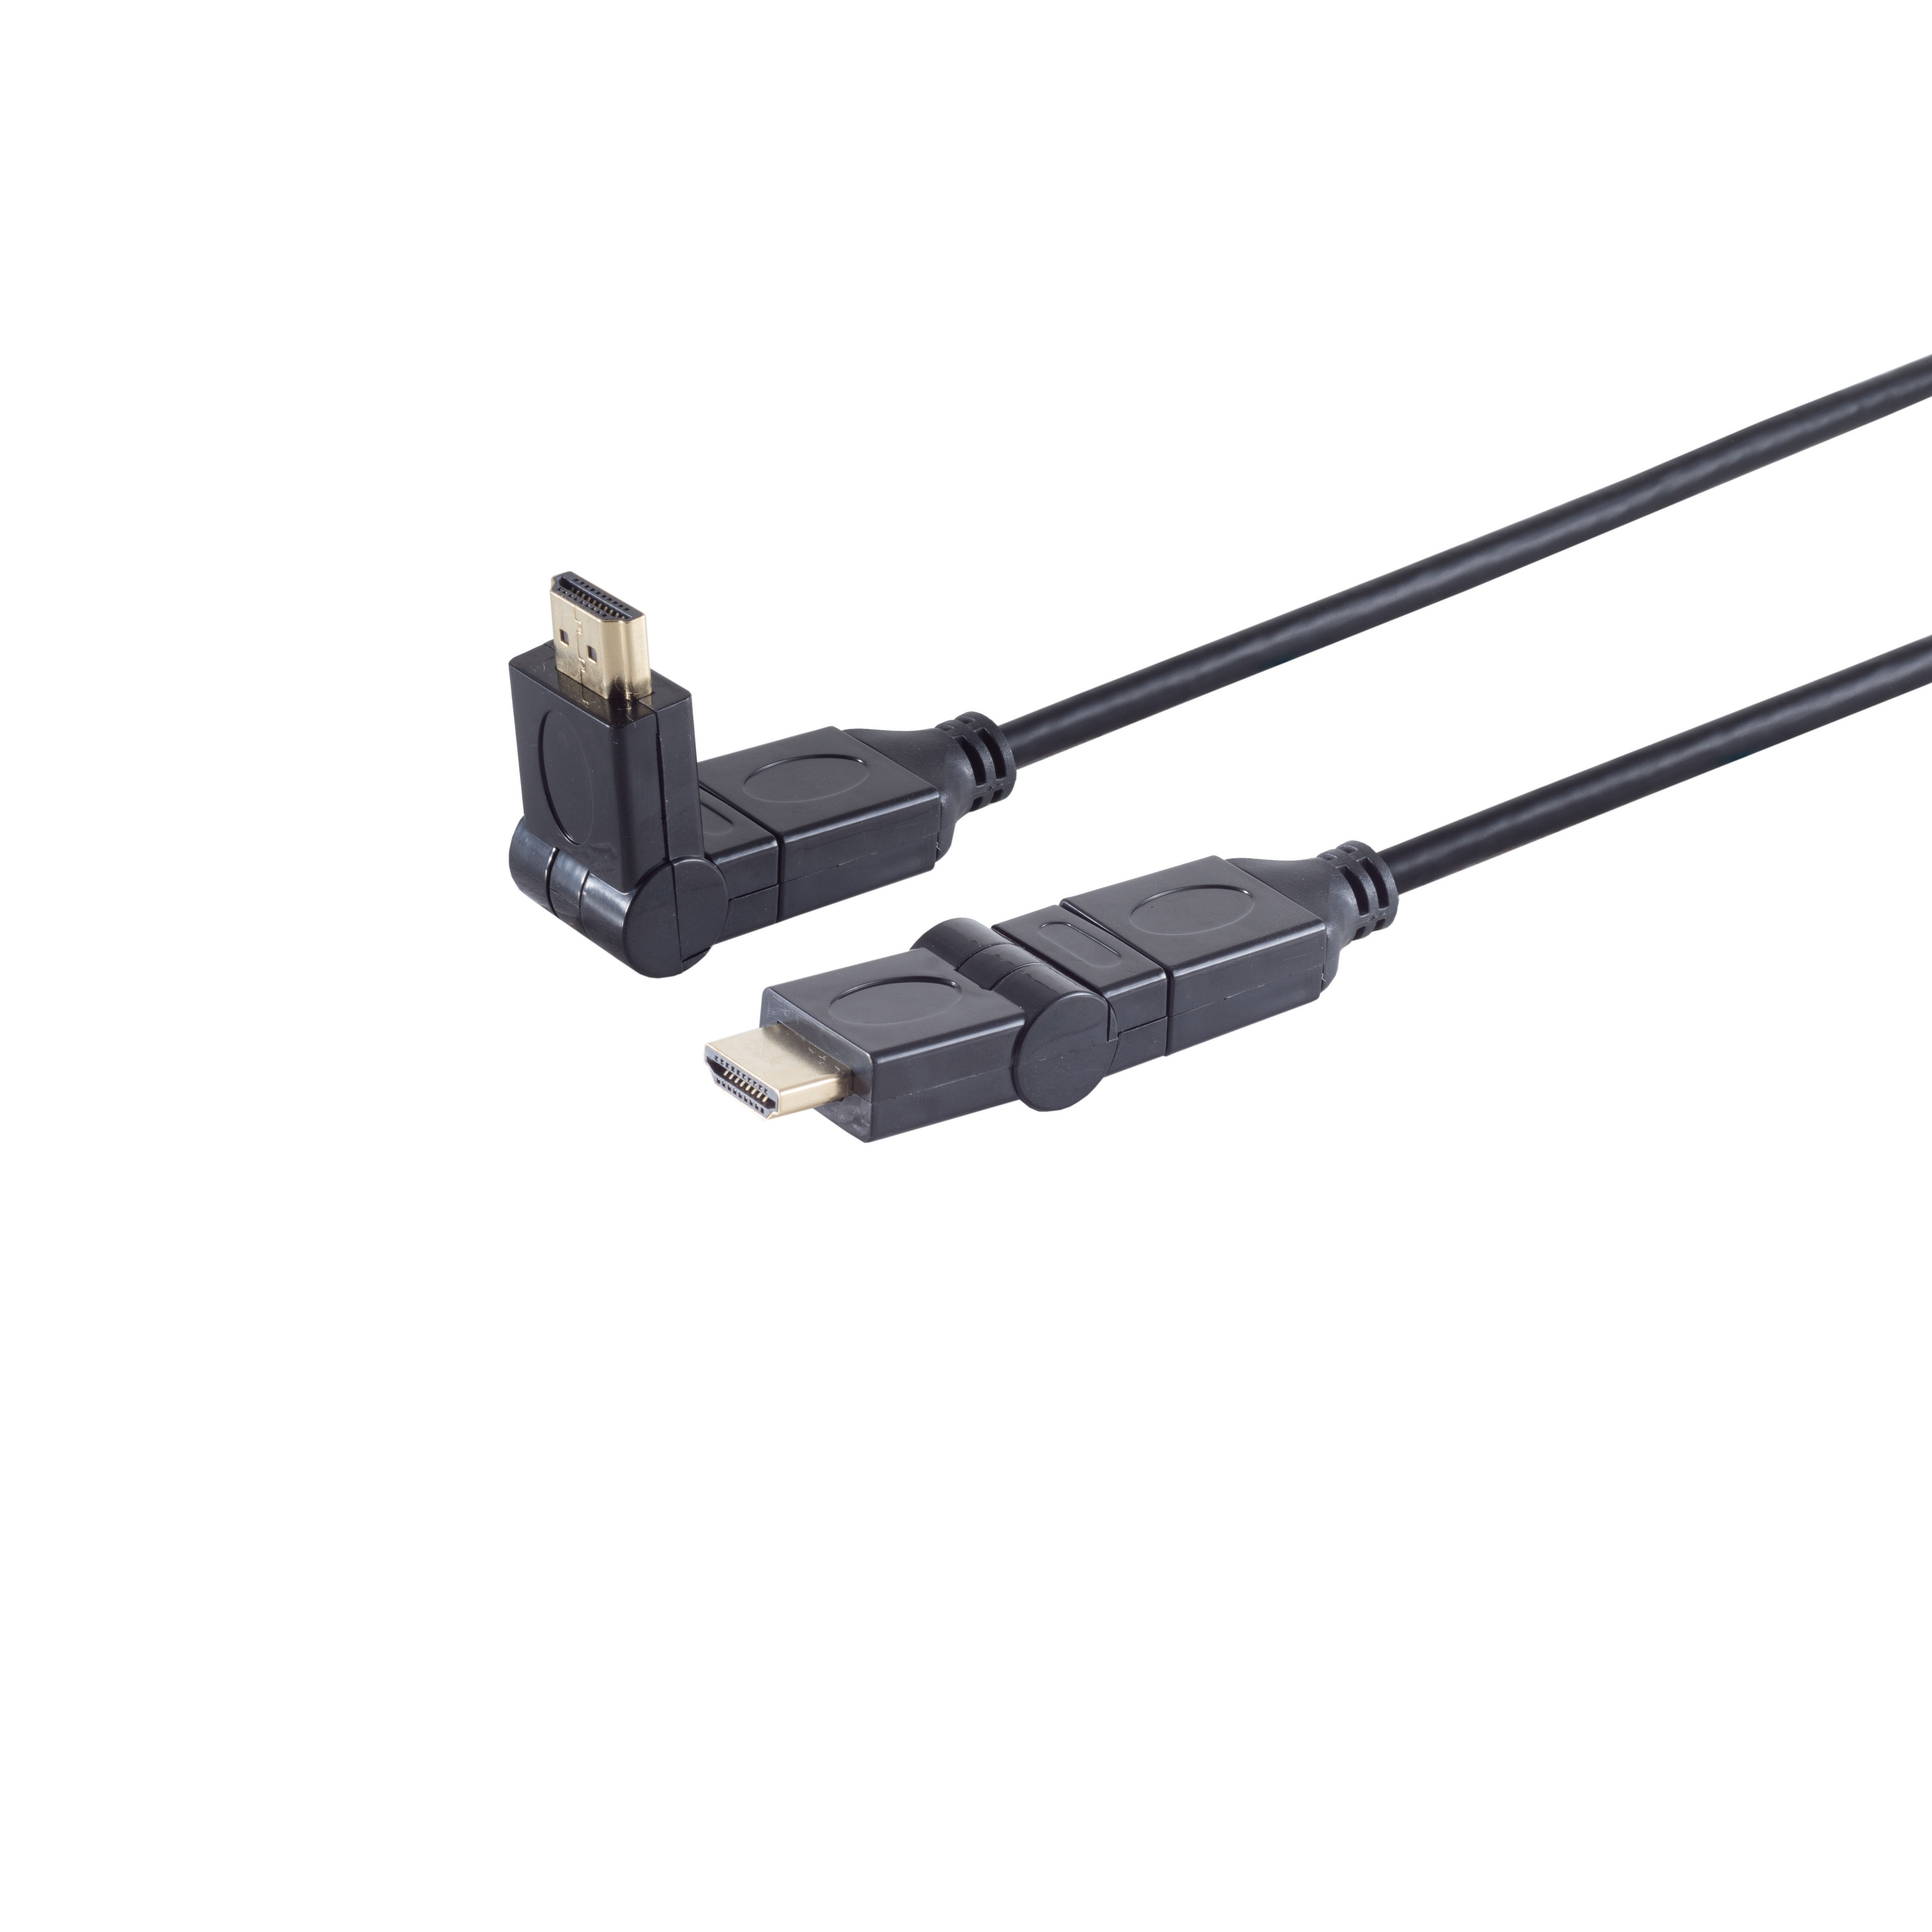 HEAC MAXIMUM S/CONN A-Stecker/HDMI winkelbar HDMI CONNECTIVITY 2m Kabel A-Stecker HDMI